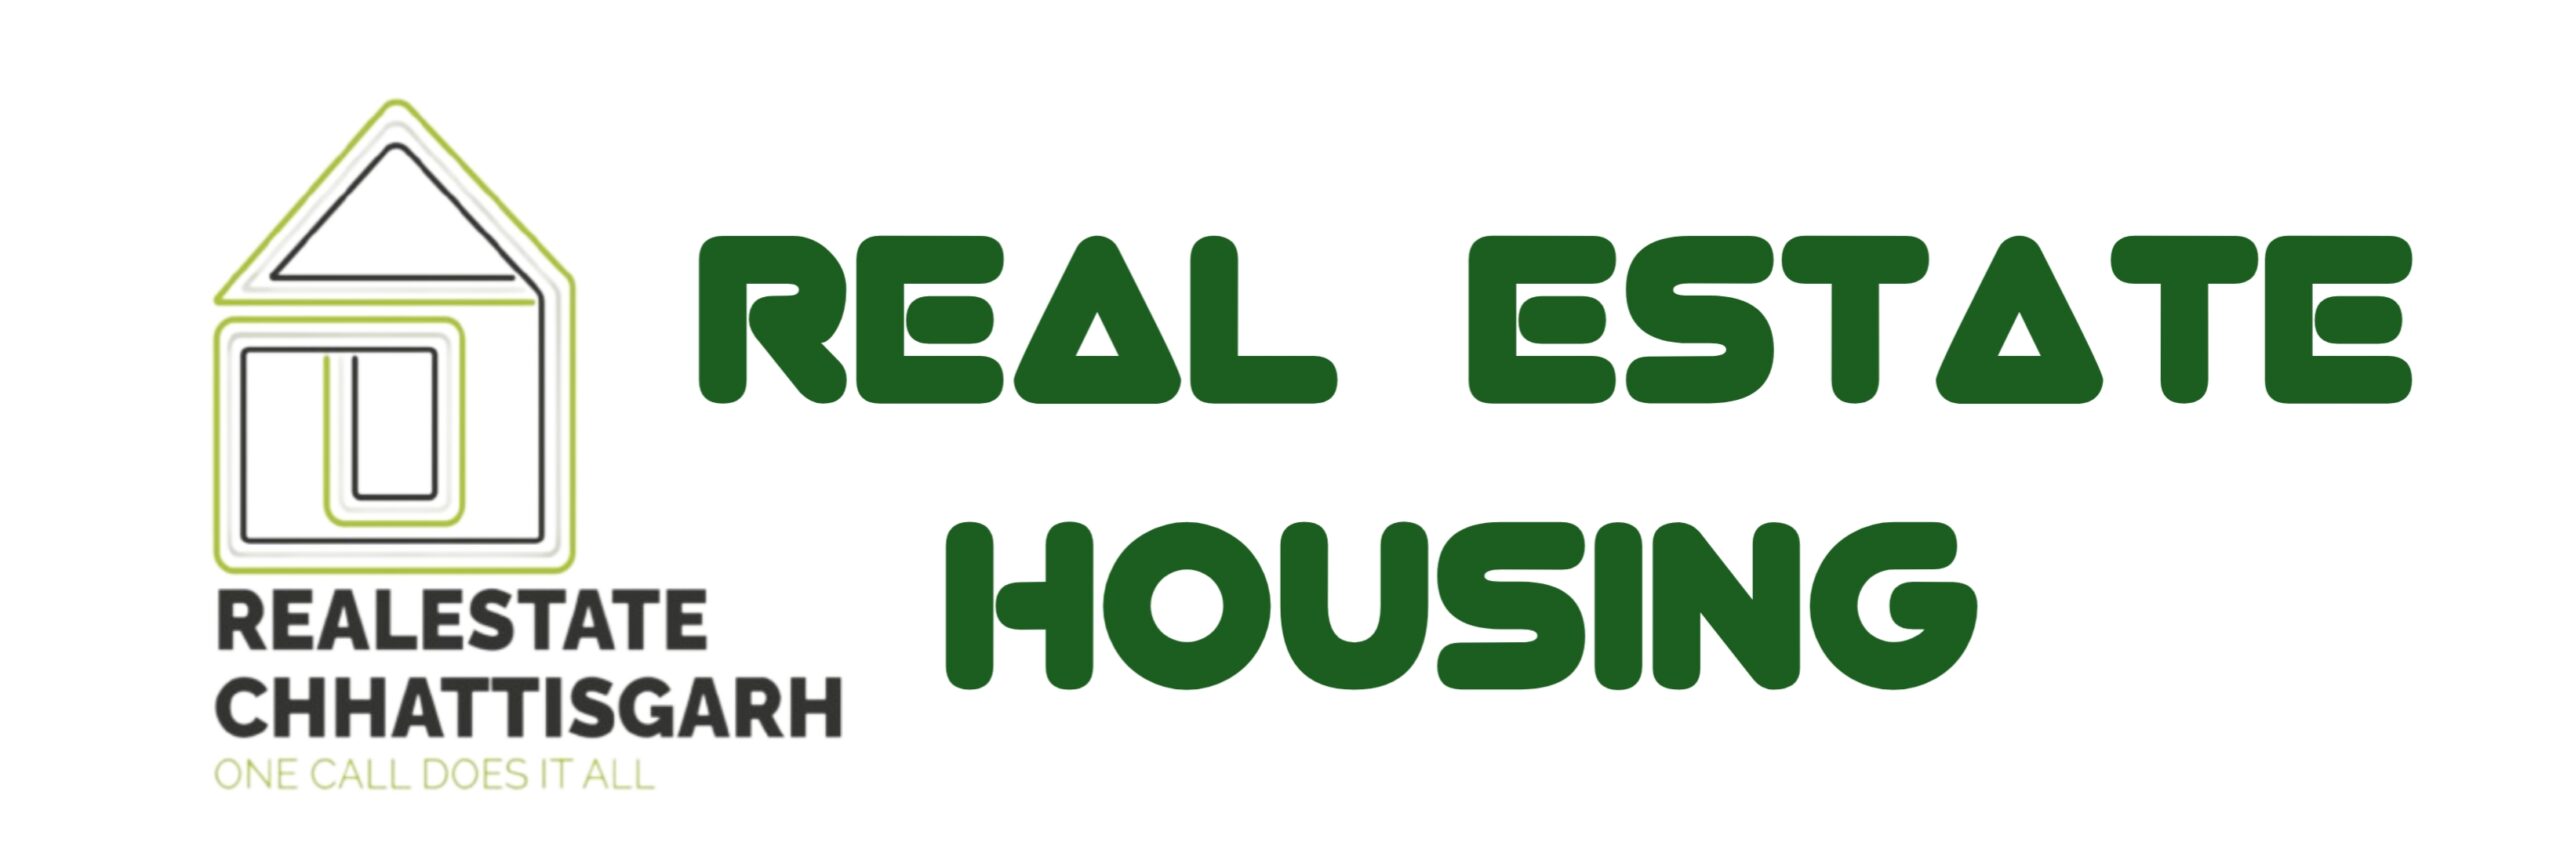 Real Estate Housing